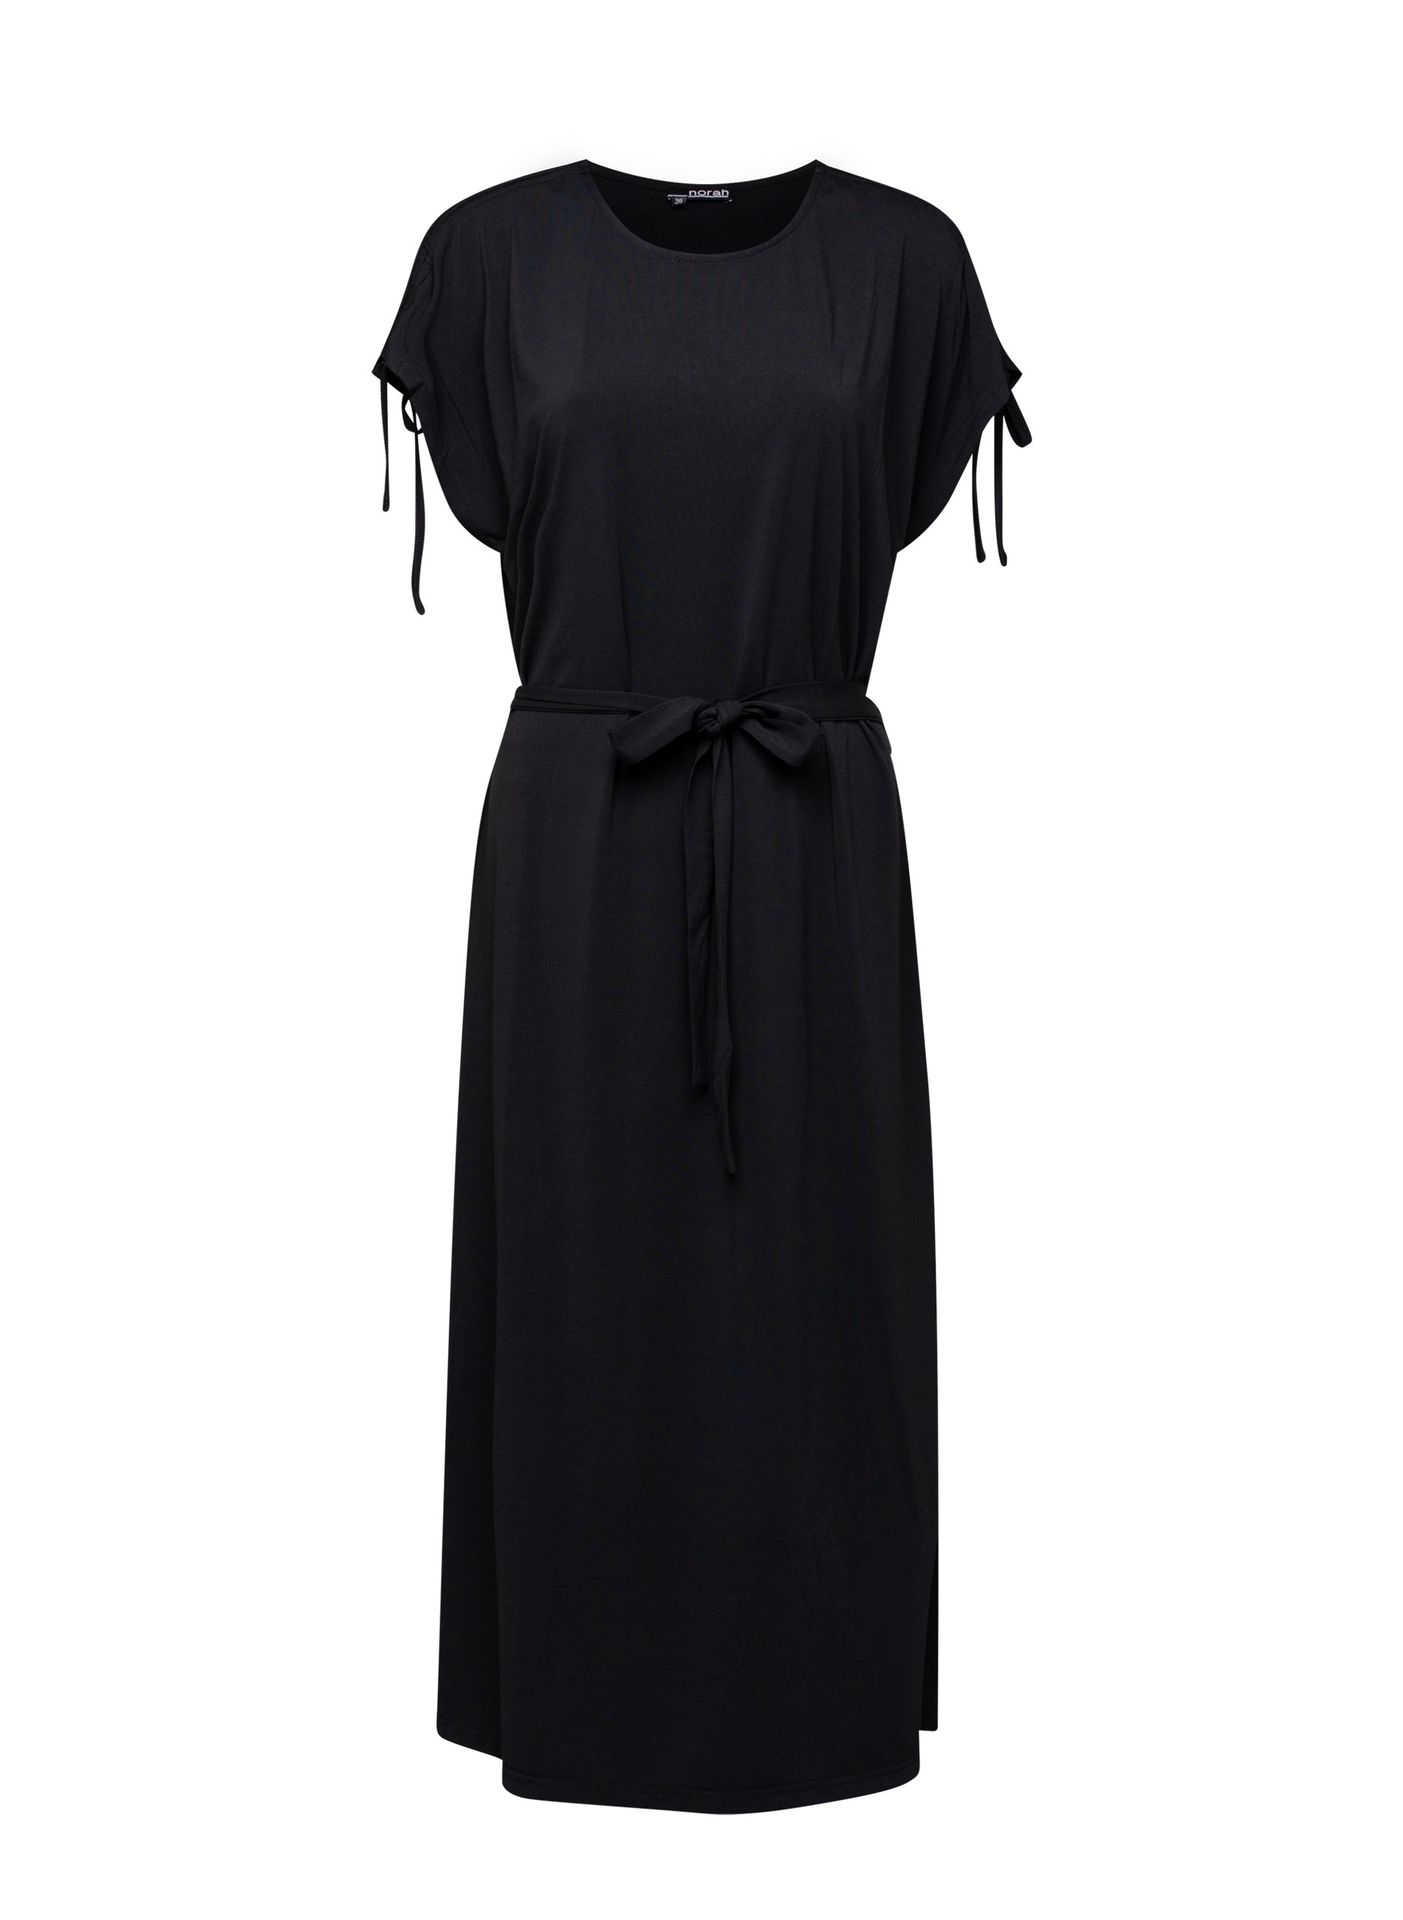 Norah Midi jurk zwart met koordjes black 212719-001